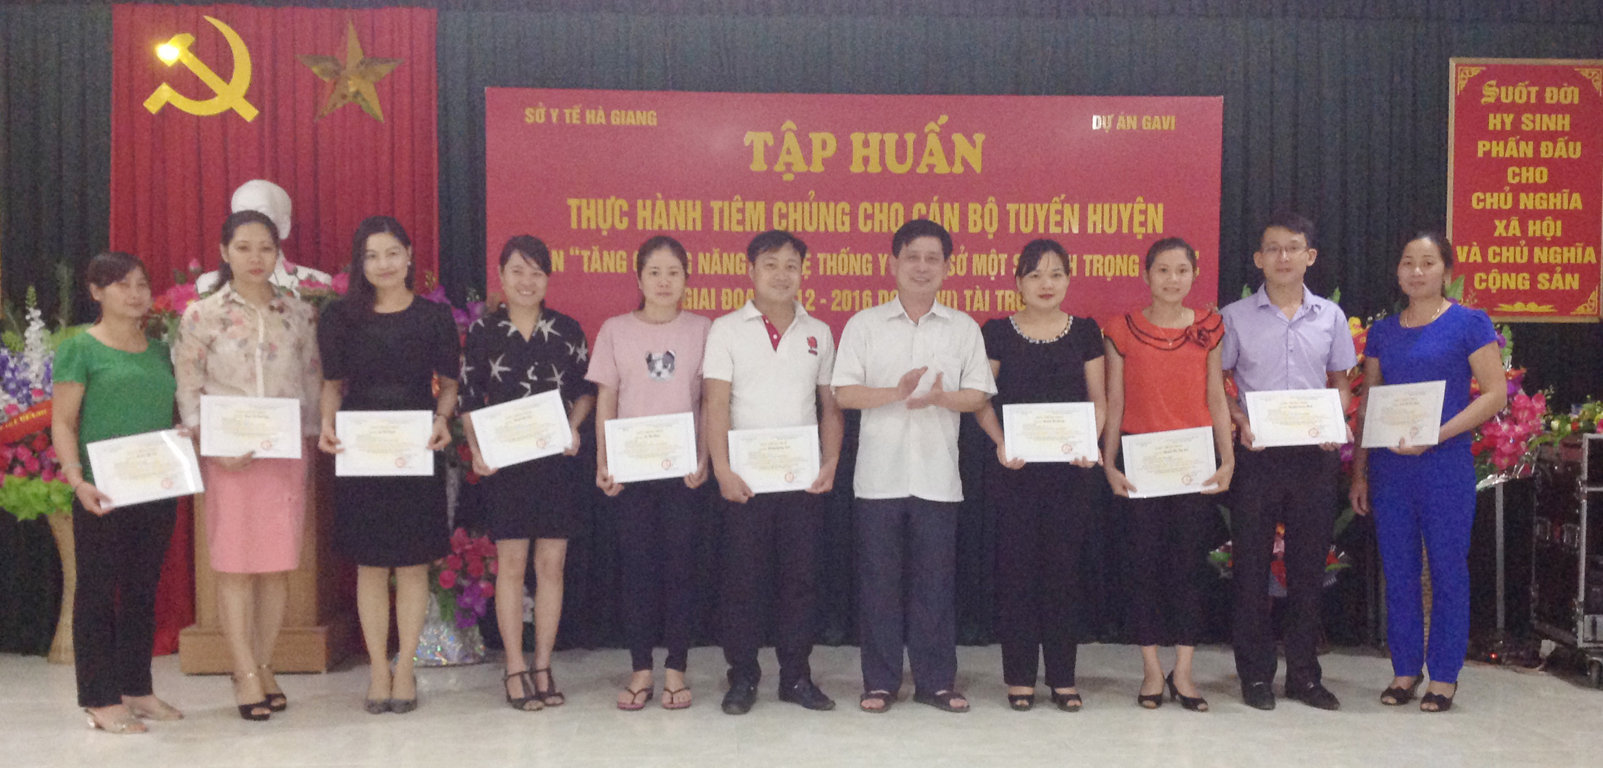 Đ/c Đặng Văn Huynh, Phó Giám đốc SYT trao Giấy chứng nhận cho cán bộ y tế tuyến huyện dự lớp tập huấn thực hành tiêm chủng